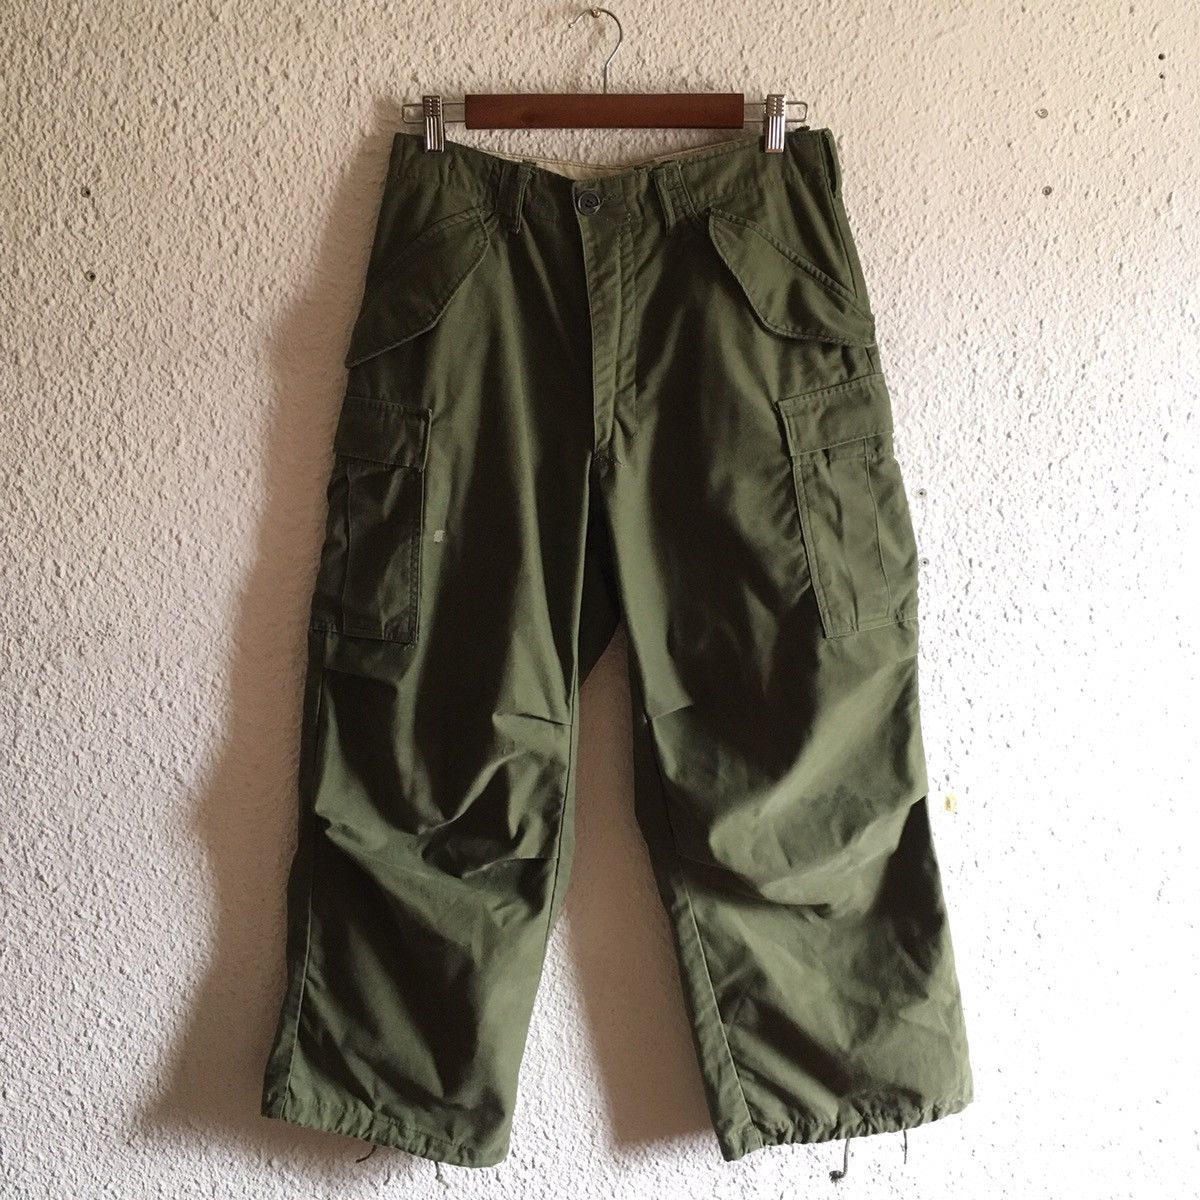 Vintage US Army Original M65 Pants (1968) | Grailed